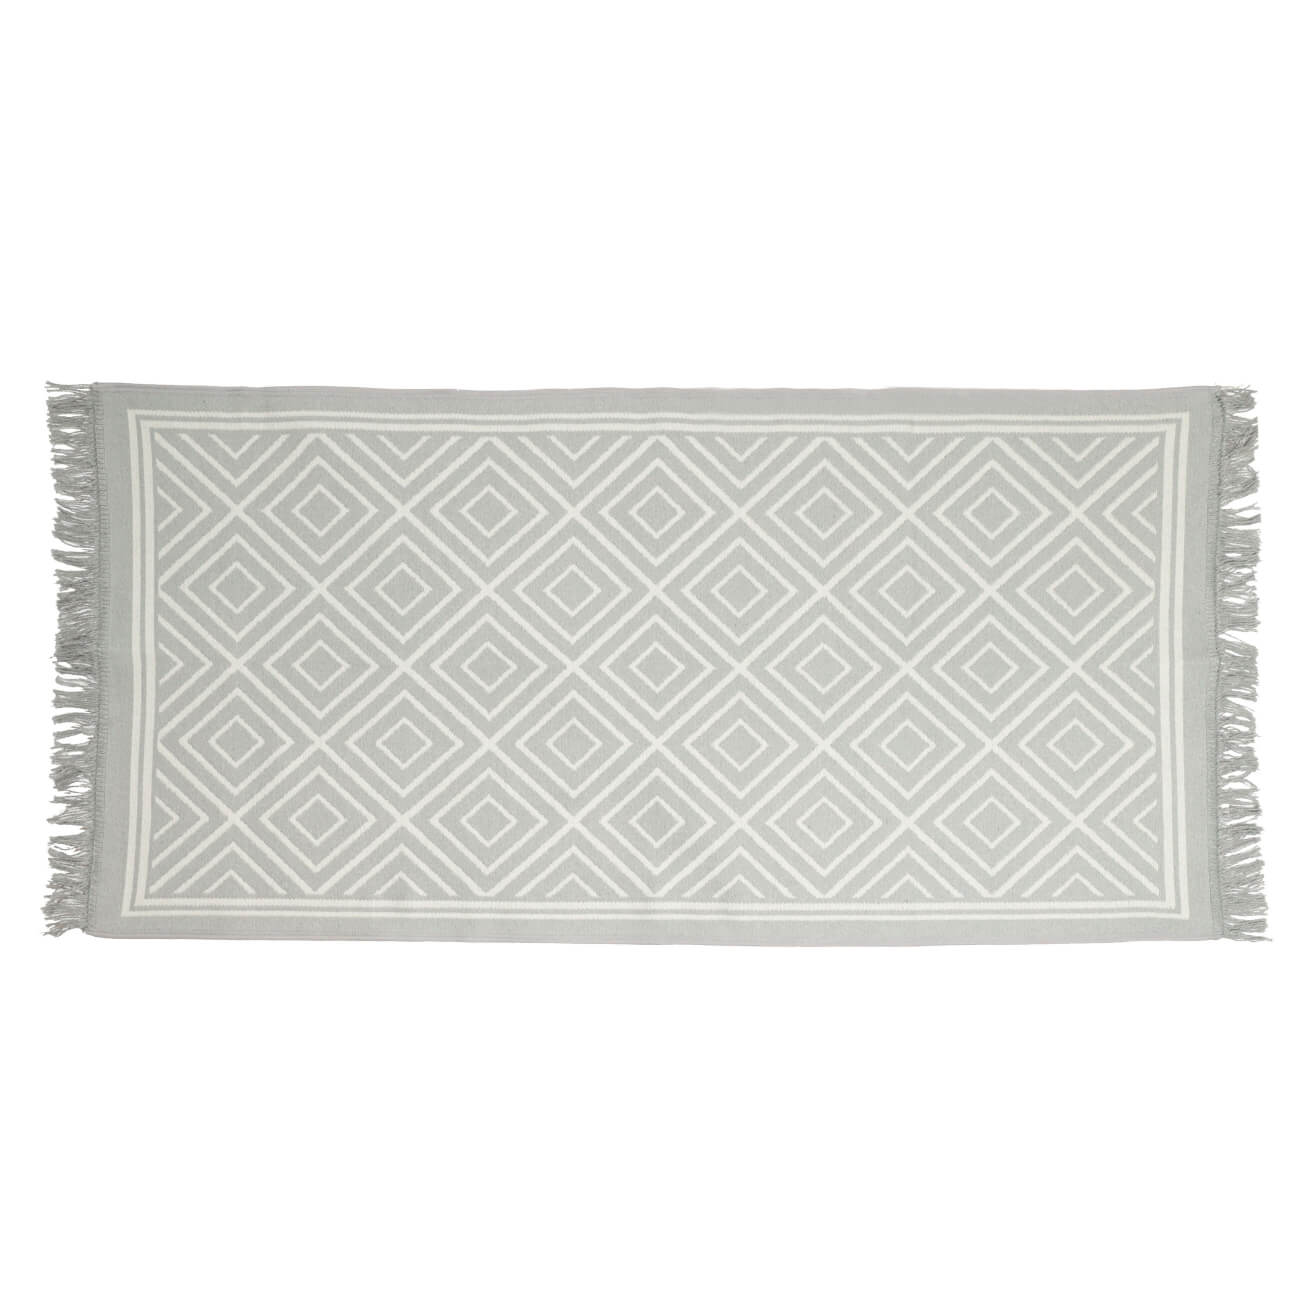 Коврик, 80х150 см, двусторонний, с бахромой, акрил, бело-серый, Узор, Carpet коврик придверный x y carpet хлопковый чёрно белый 60х90 см